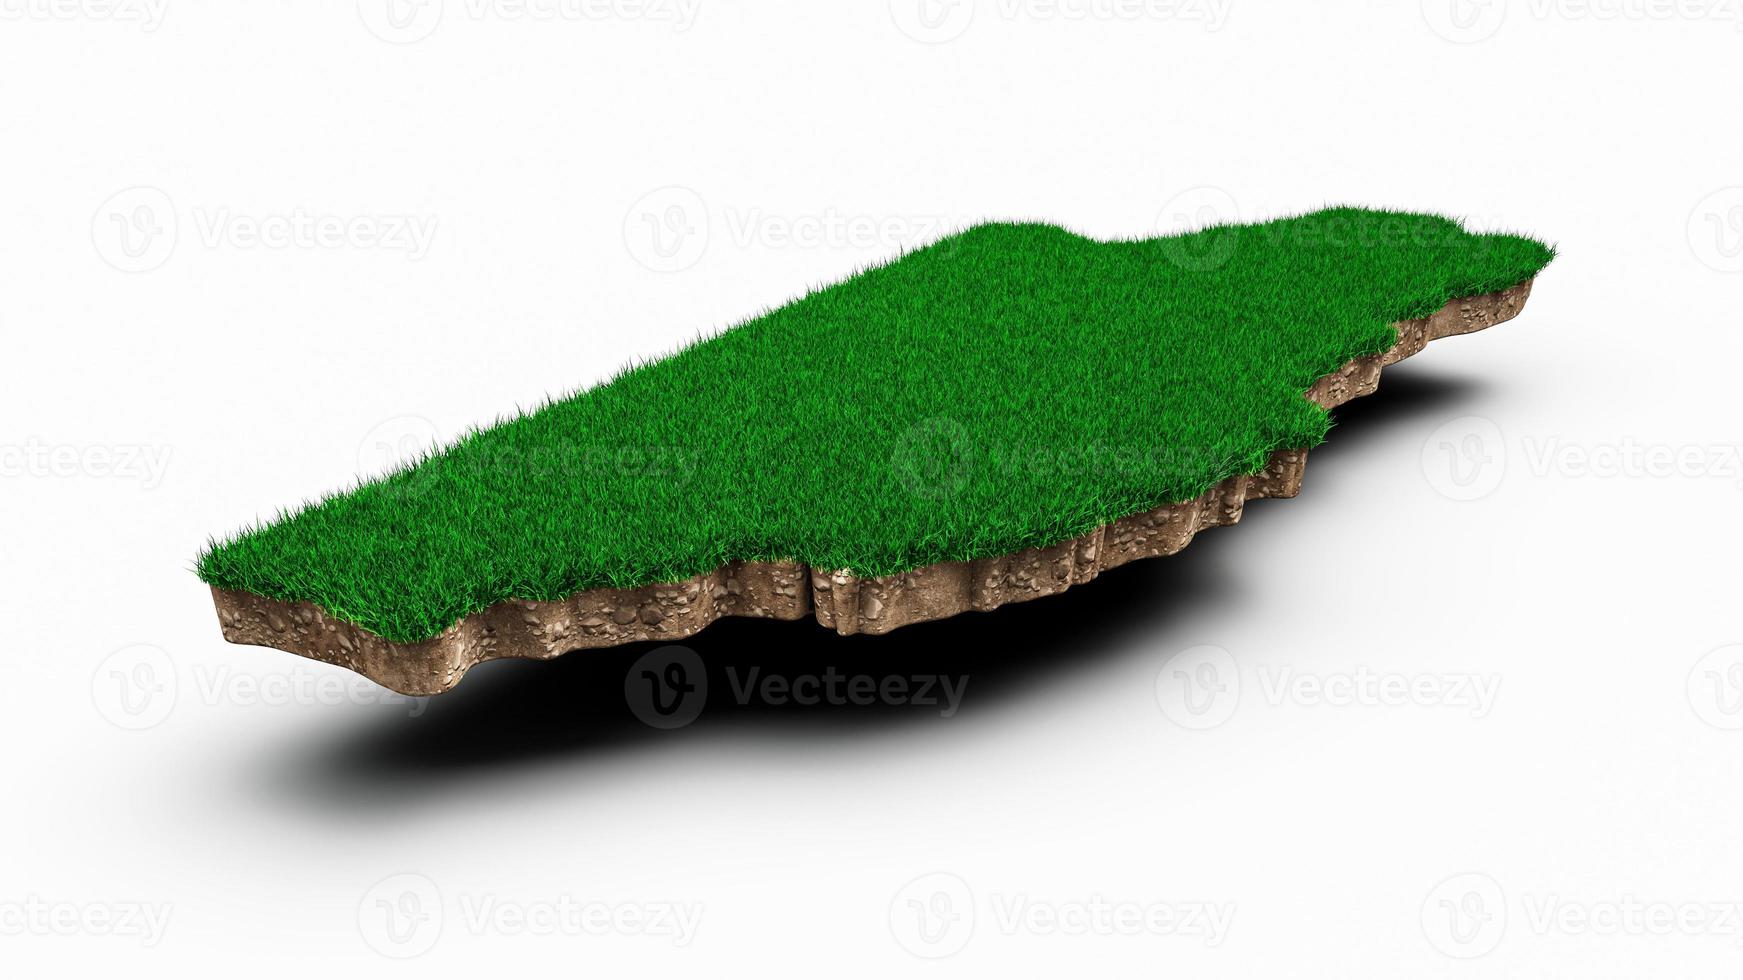 belize carte coupe transversale de la géologie des sols avec de l'herbe verte et de la texture du sol rocheux illustration 3d photo